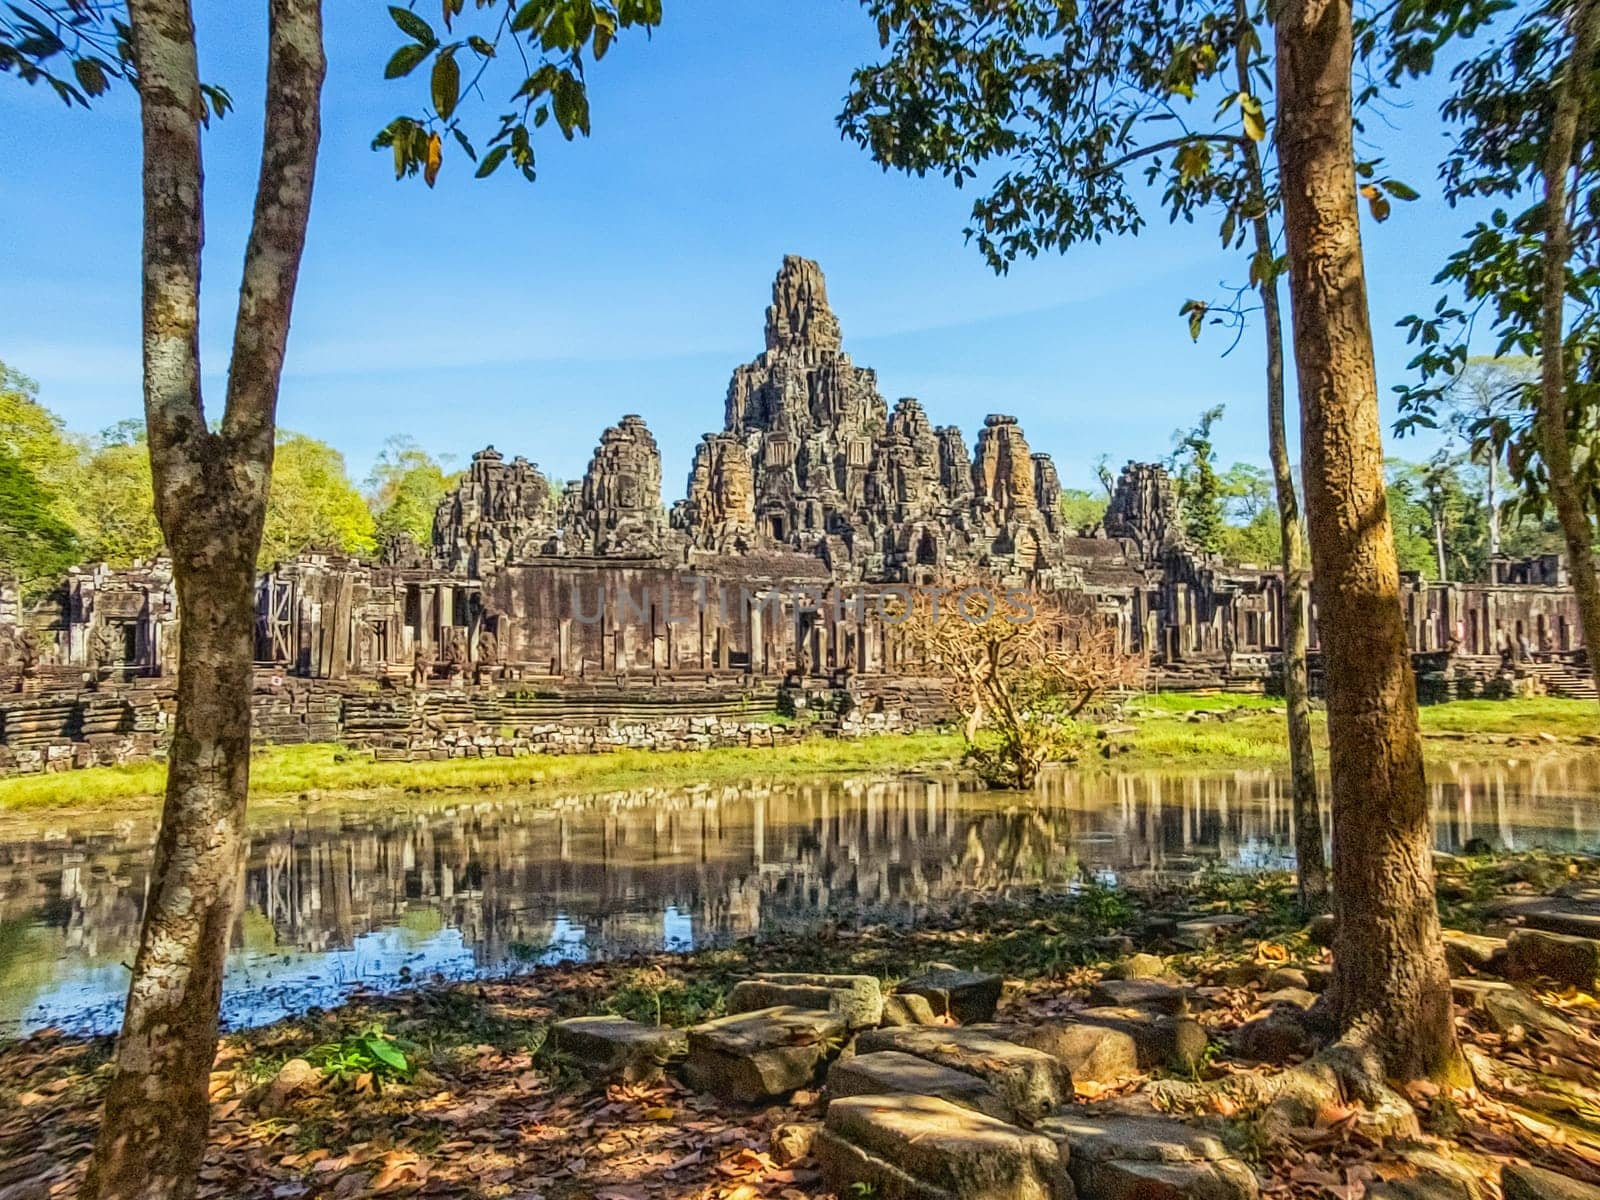 Bayon temple at Angkor Thom, Siem Reap, Cambodia by Elenaphotos21